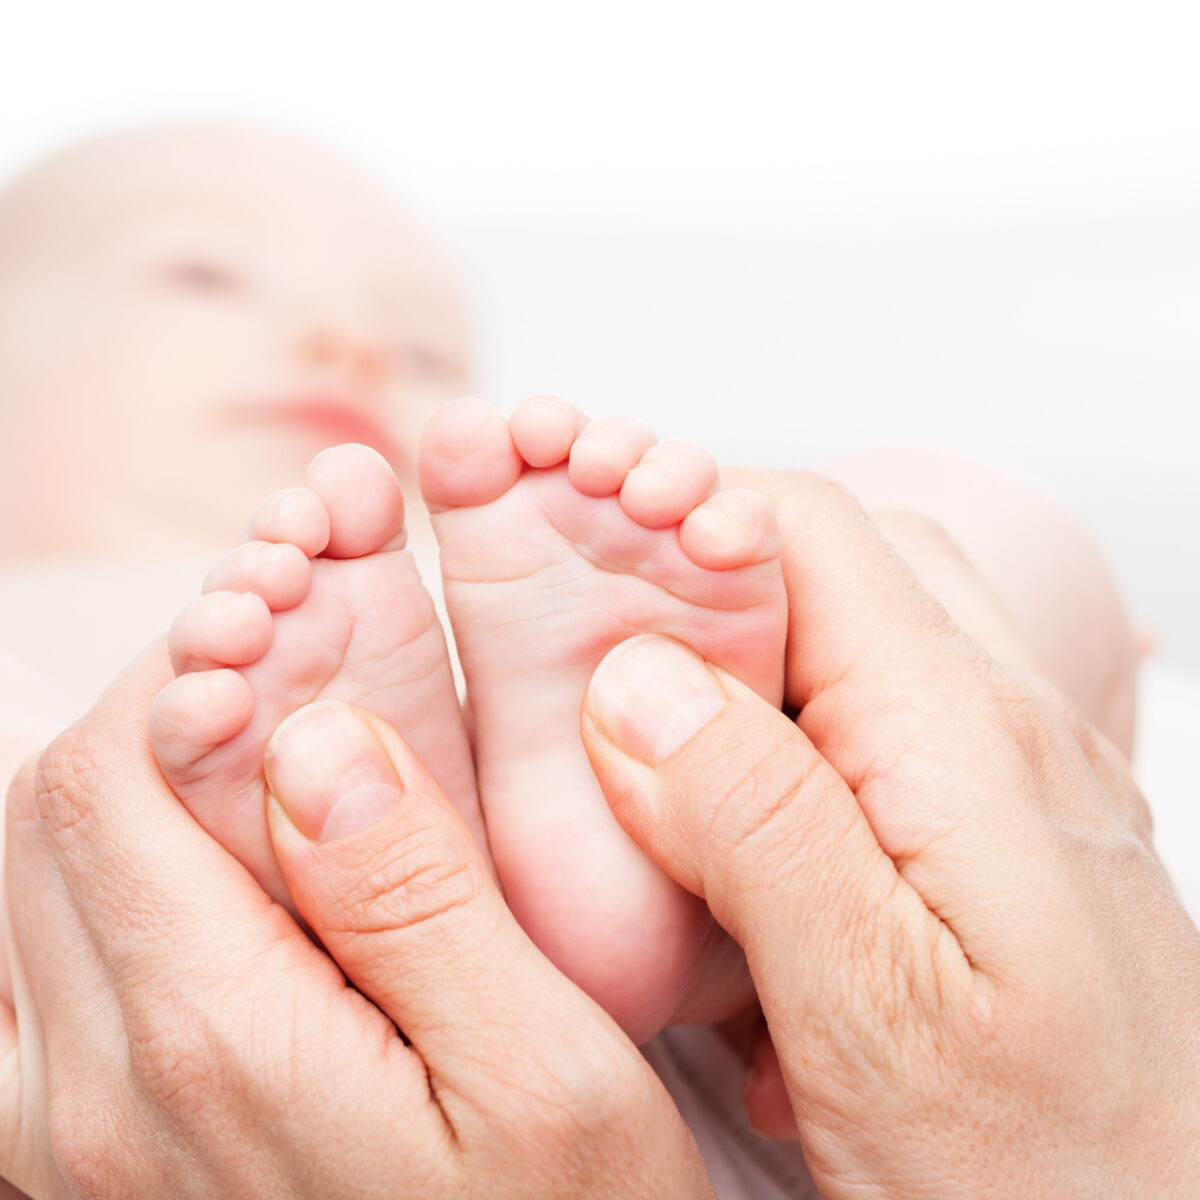 nózki noworodka w dłoniach dorosłej osoby